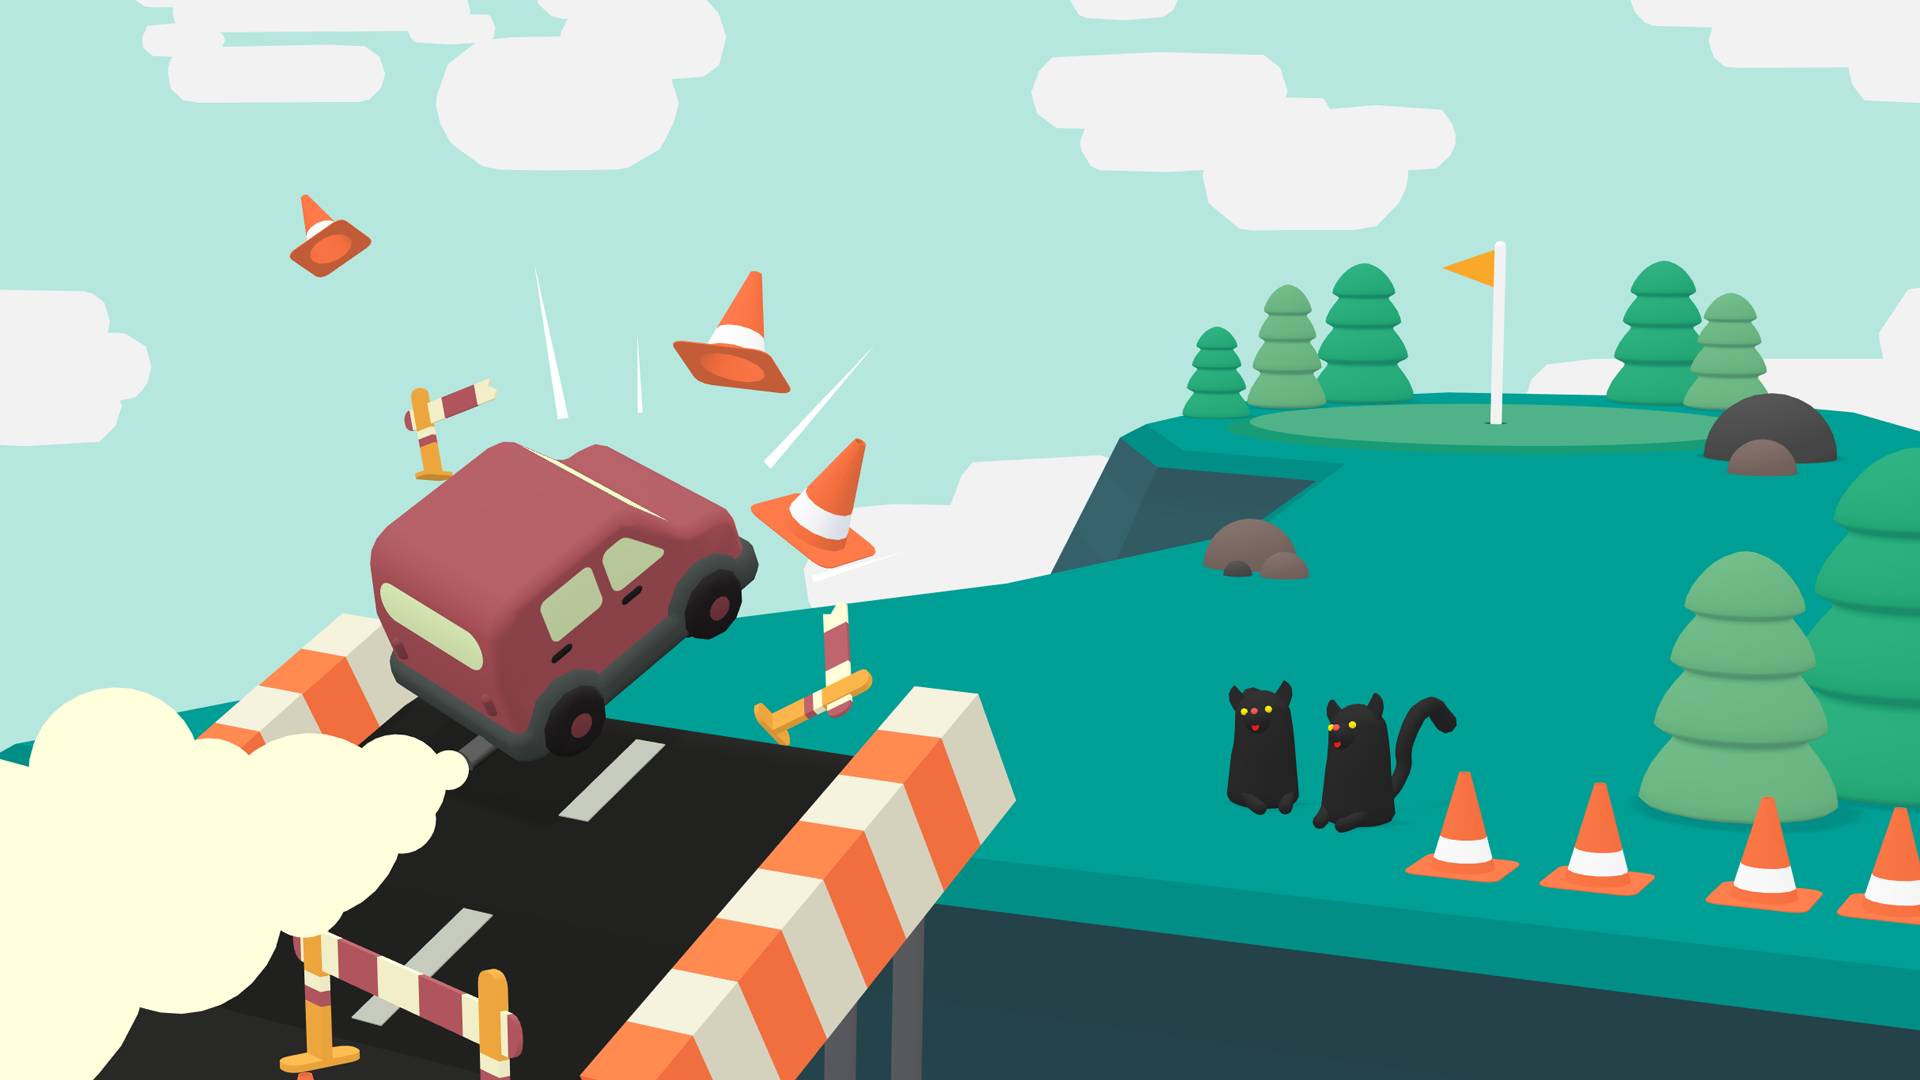 Jogos engraçados: um carro se lança de uma rampa para o ar, quebrando cones e evitando gatos por pouco 